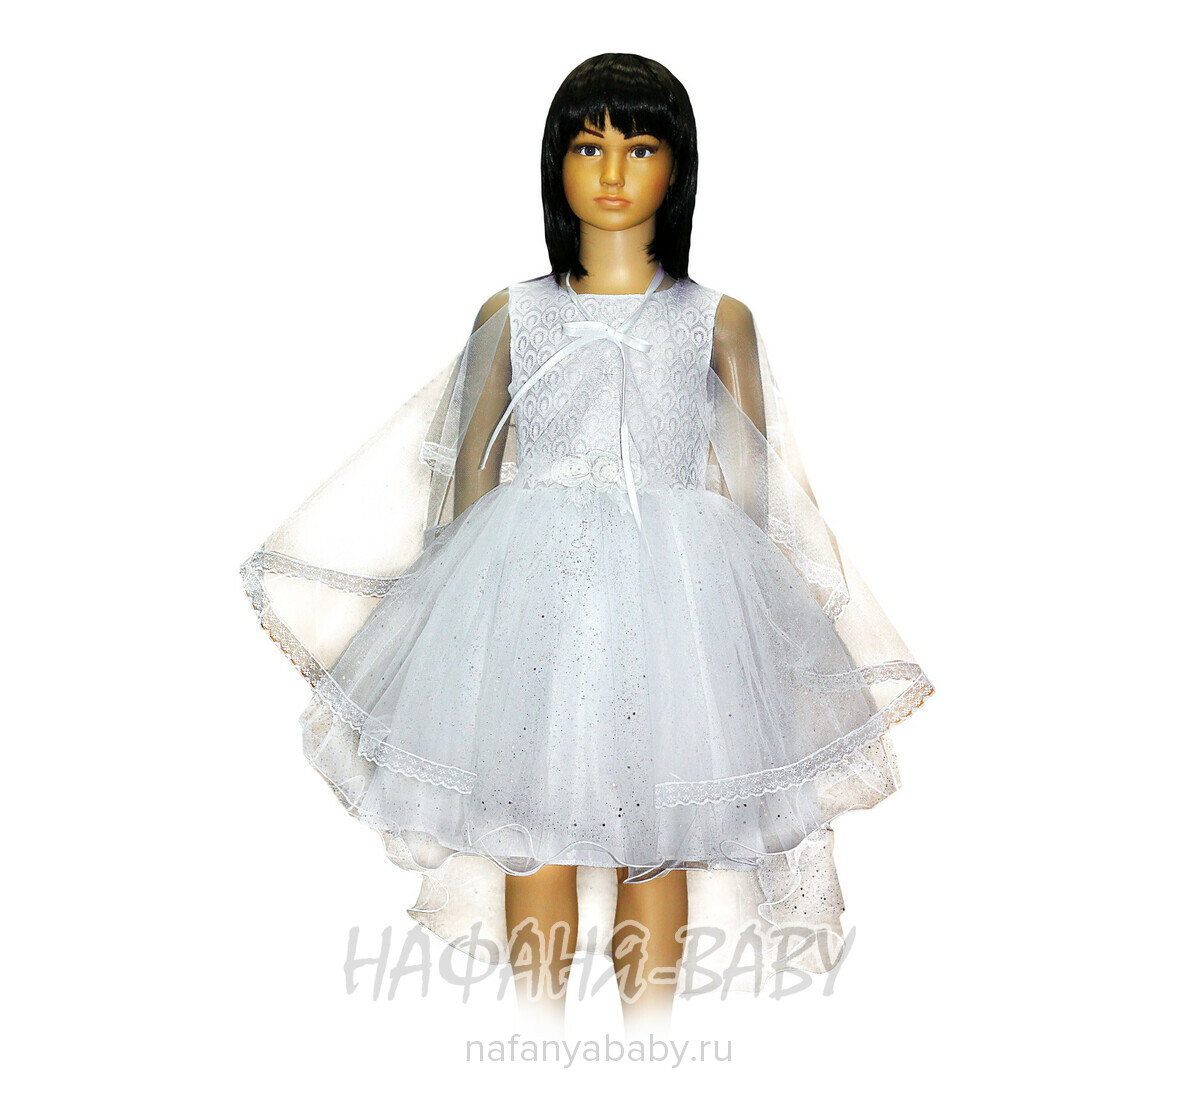 Нарядное платье с накидкой KGMART, цвет белый, купить в интернет магазине Нафаня. арт: 2188.